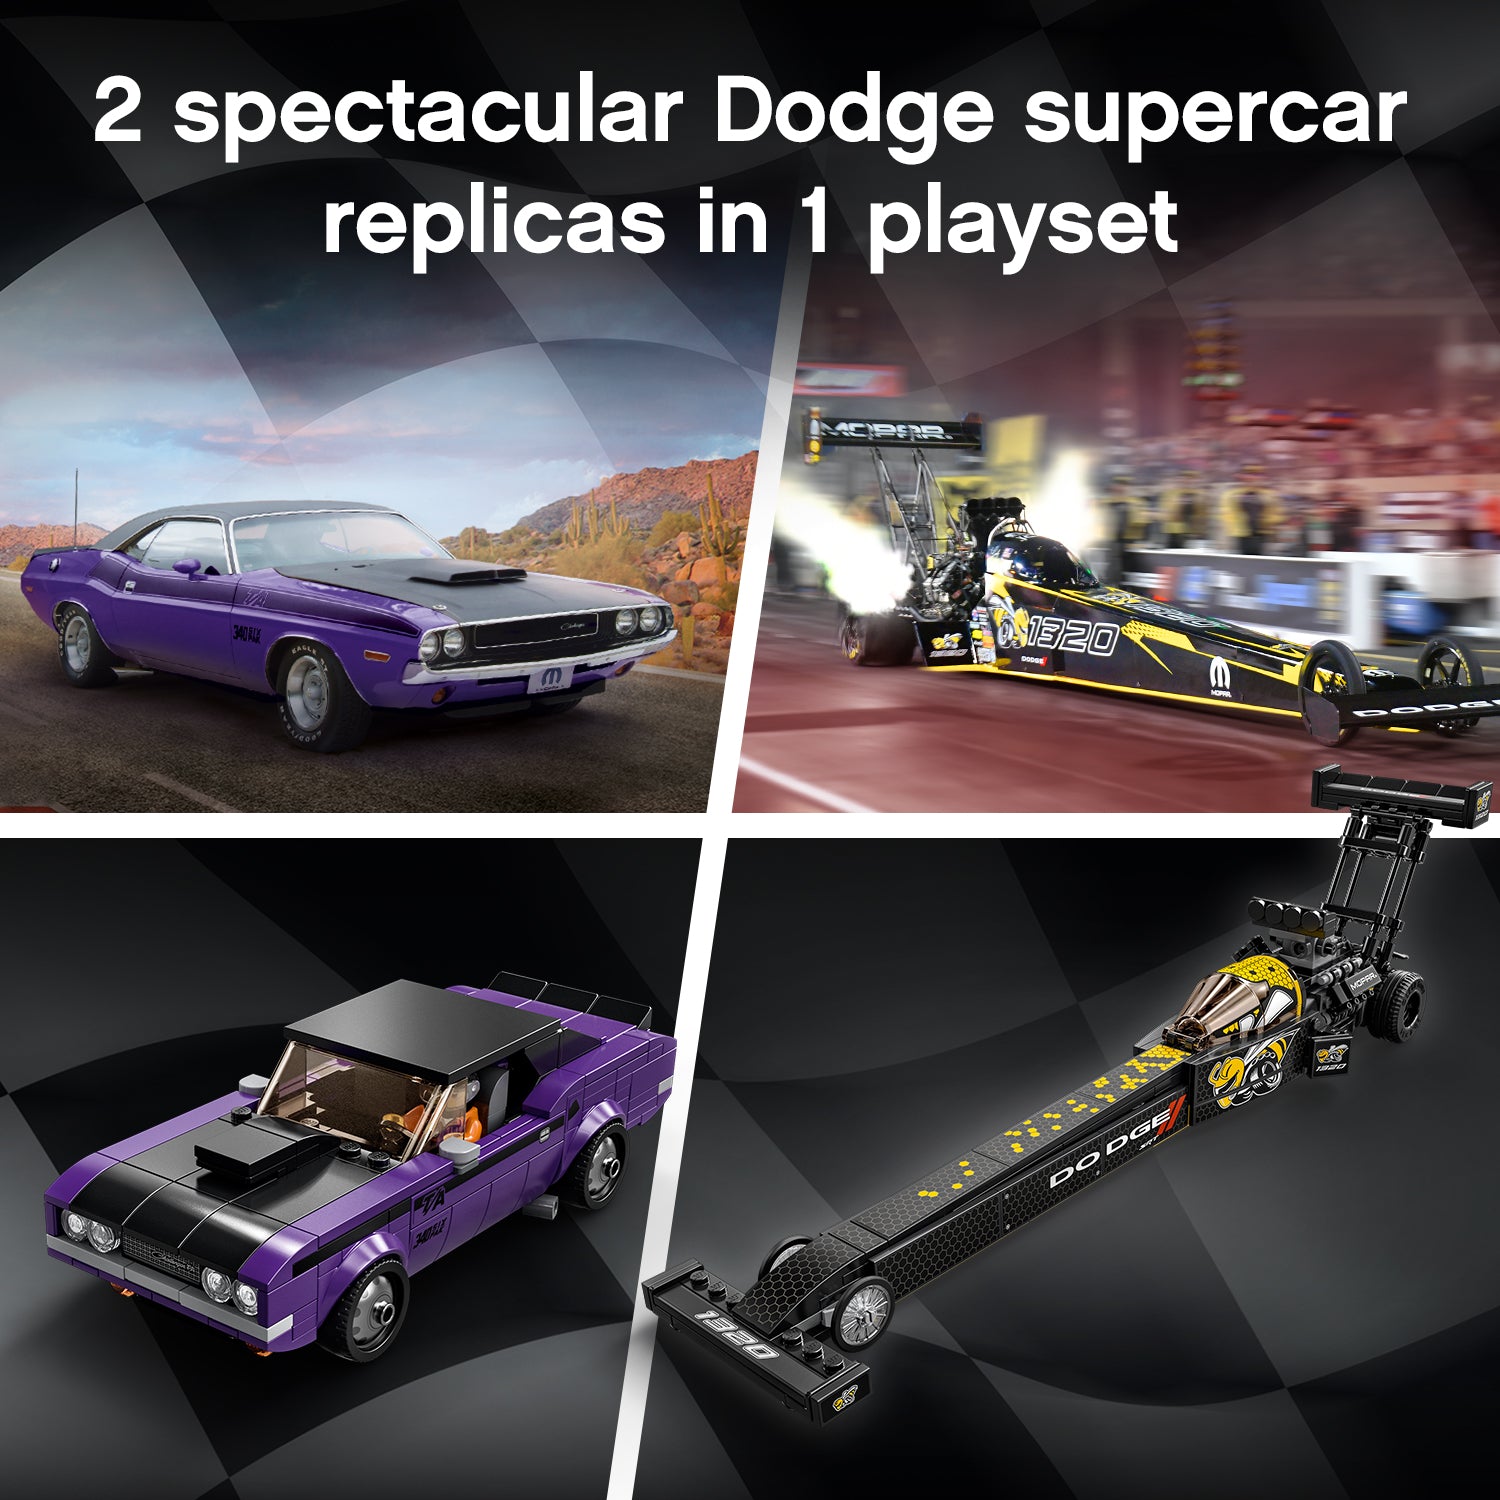 Mopar Dodge//SRT Top Fuel Dragster and 1970 Dodge Challenger T/A